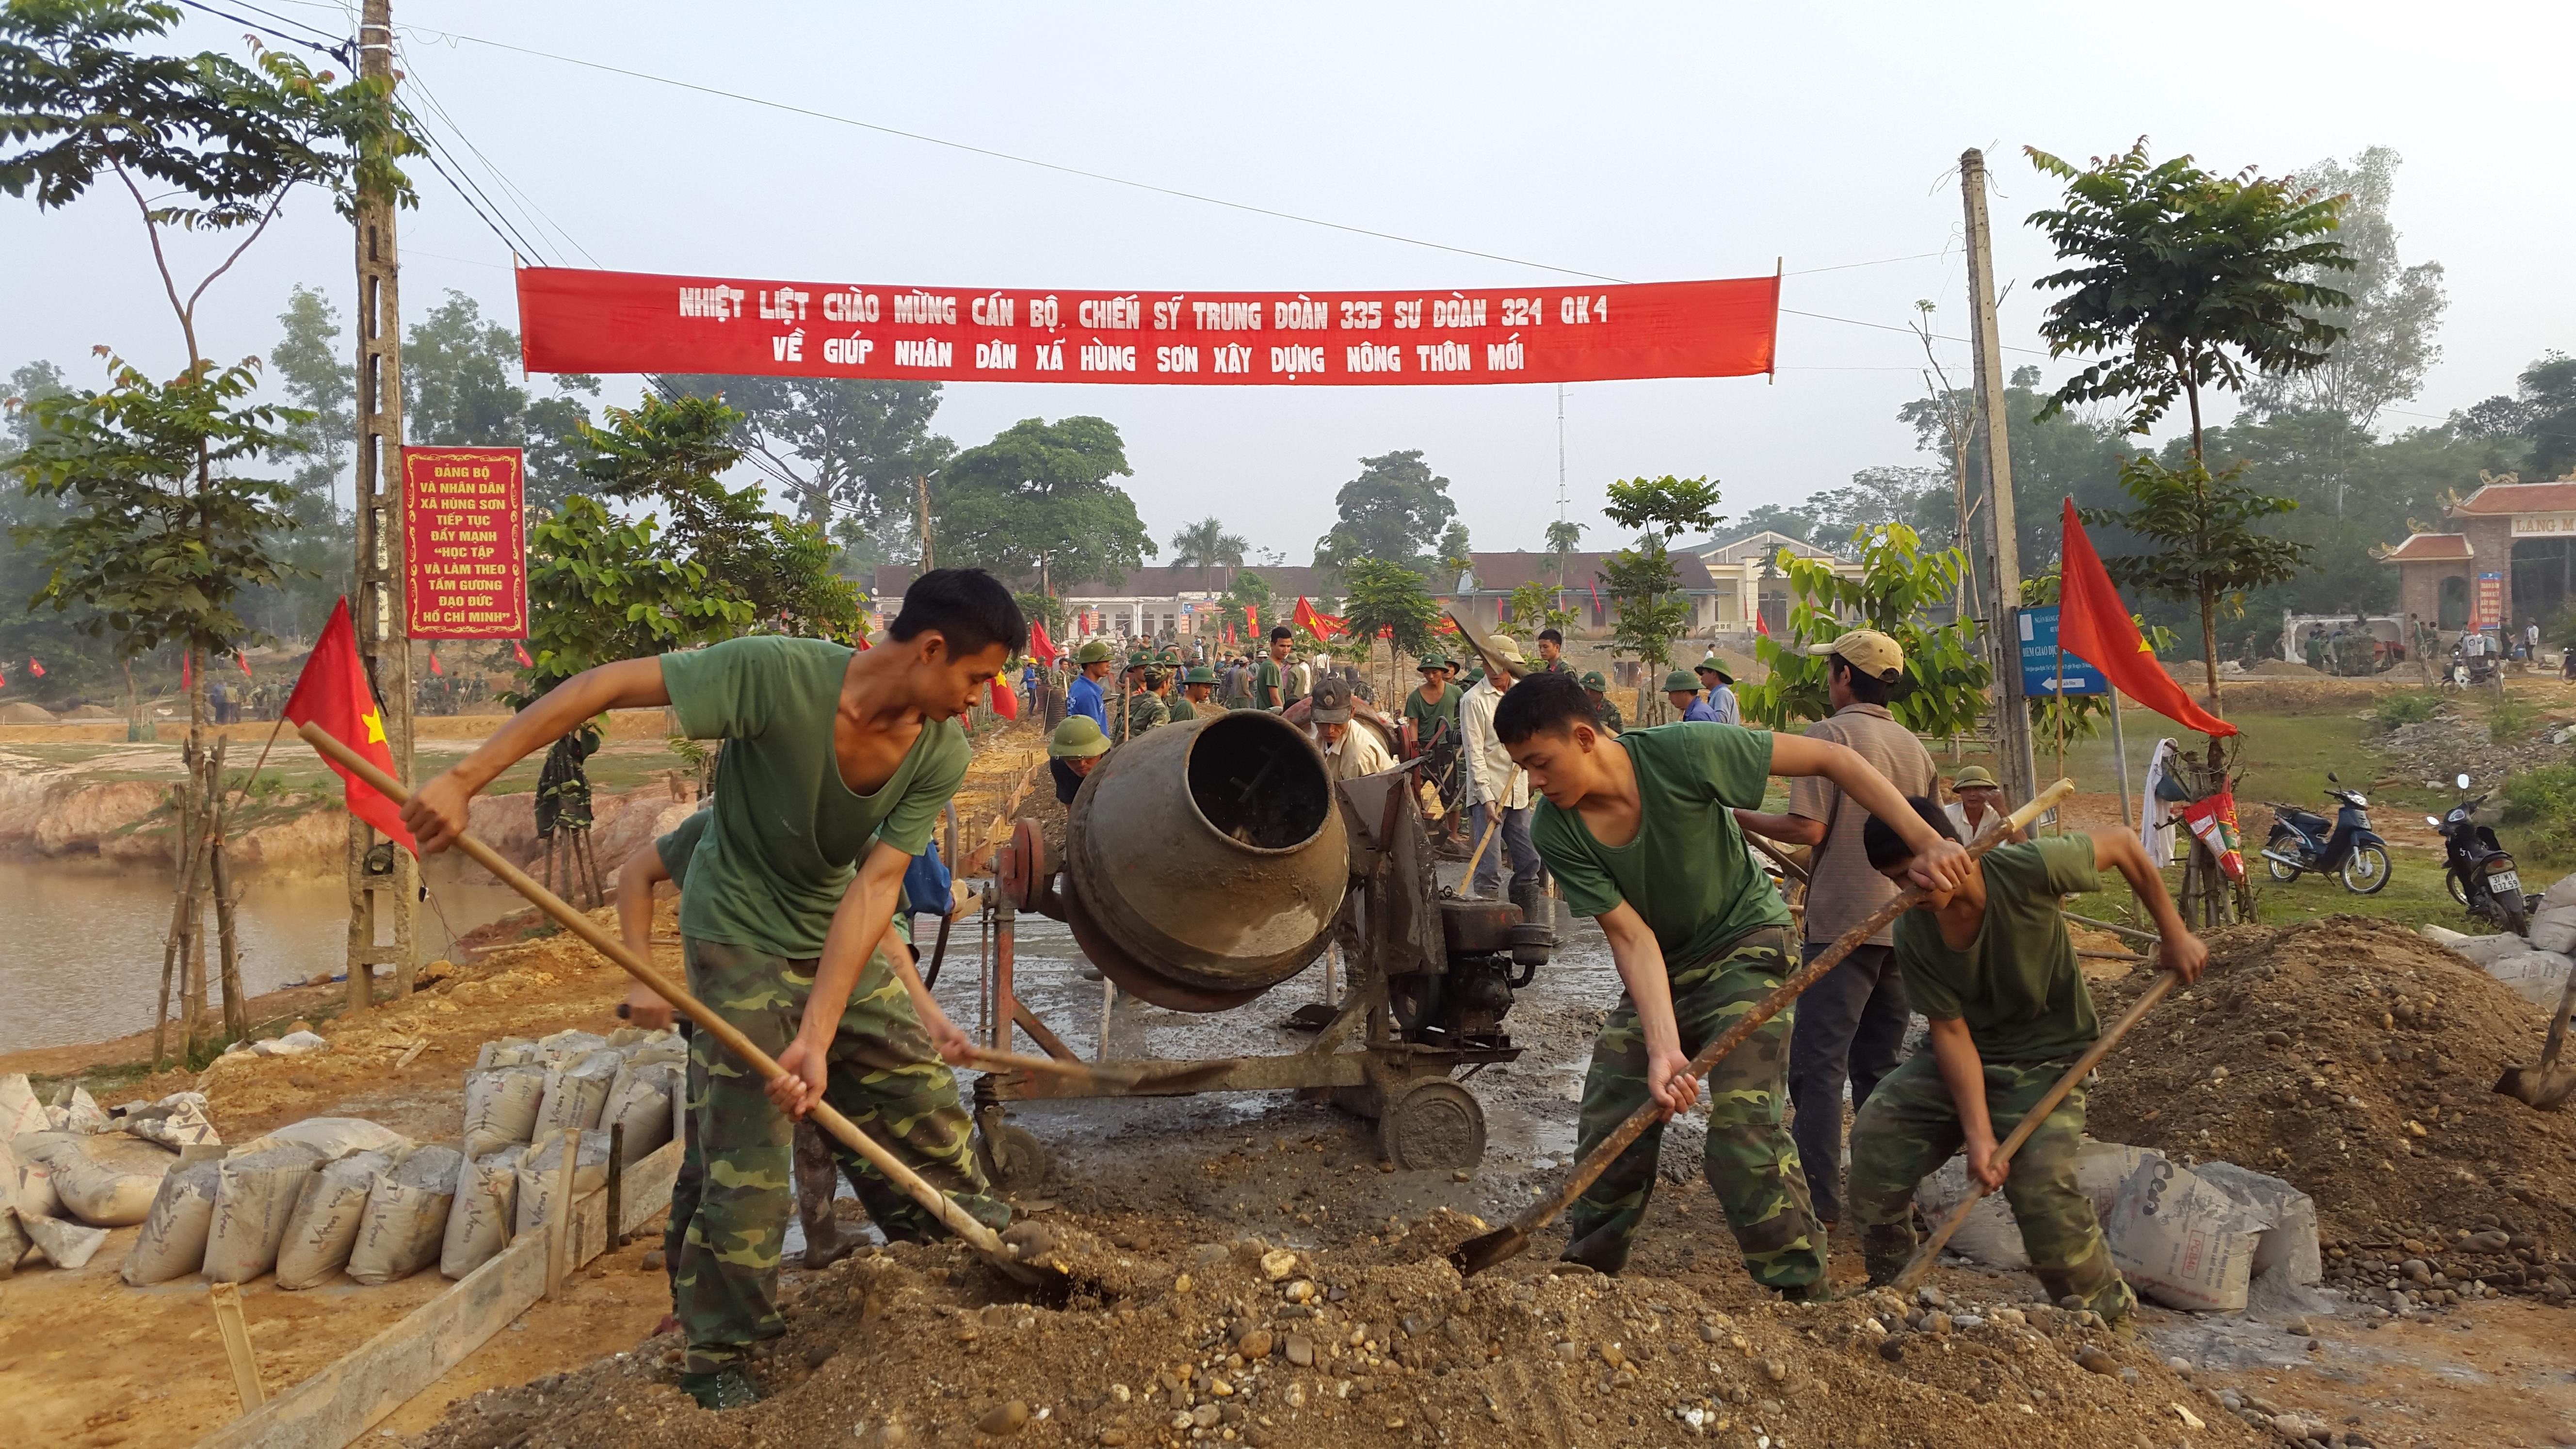 Cán bộ chiến sỹ Trung đoàn 335 tham gia xây dựng nông thôn mới tại xã Hùng Sơn, Anh Sơn, Nghệ An.